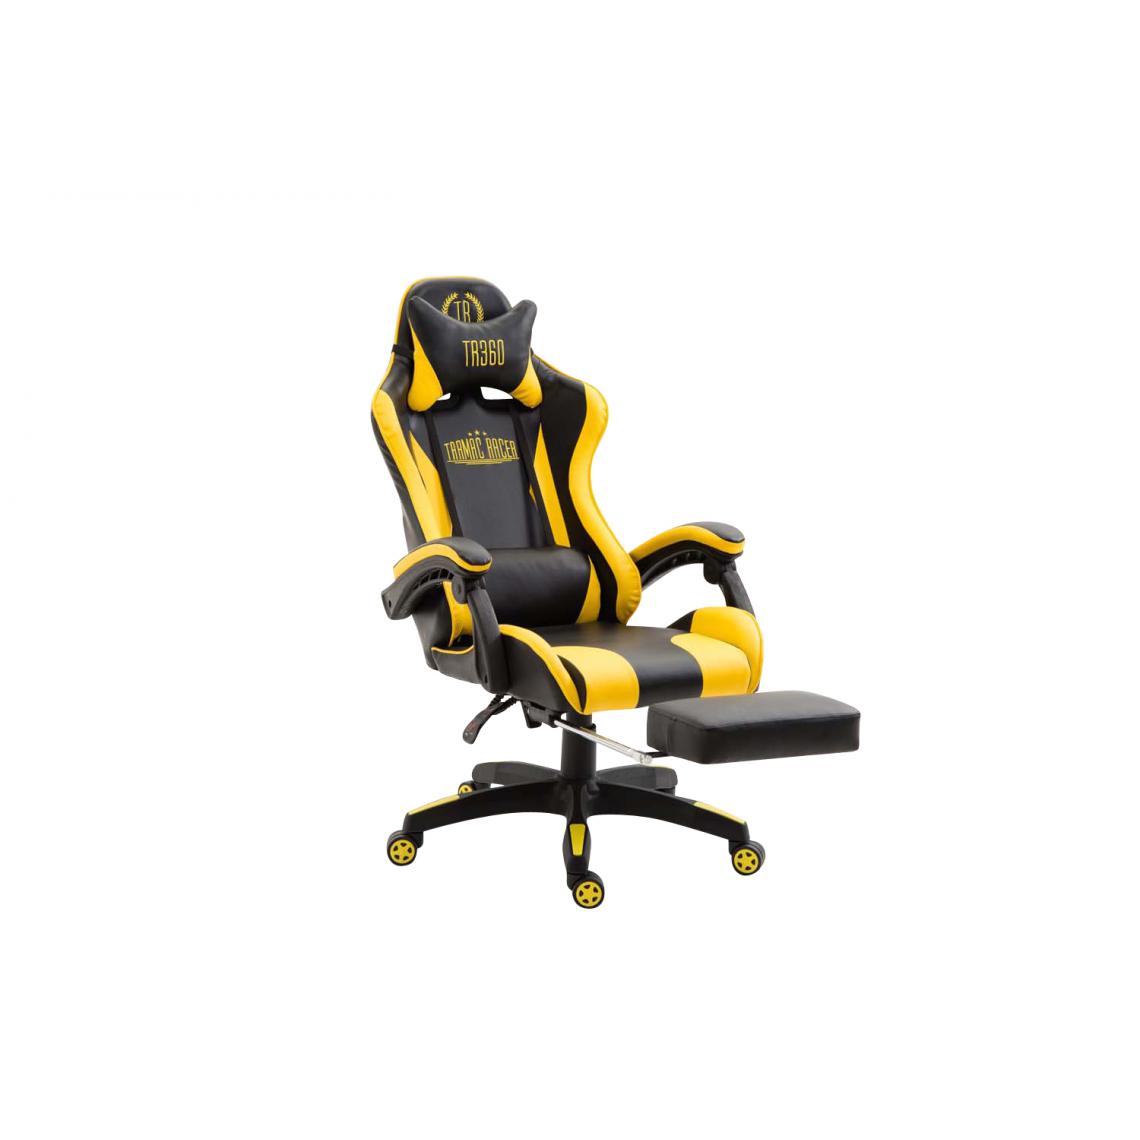 Icaverne - Stylé Chaise de bureau categorie Saint-Marin en similicuir couleur noir jaune - Chaises